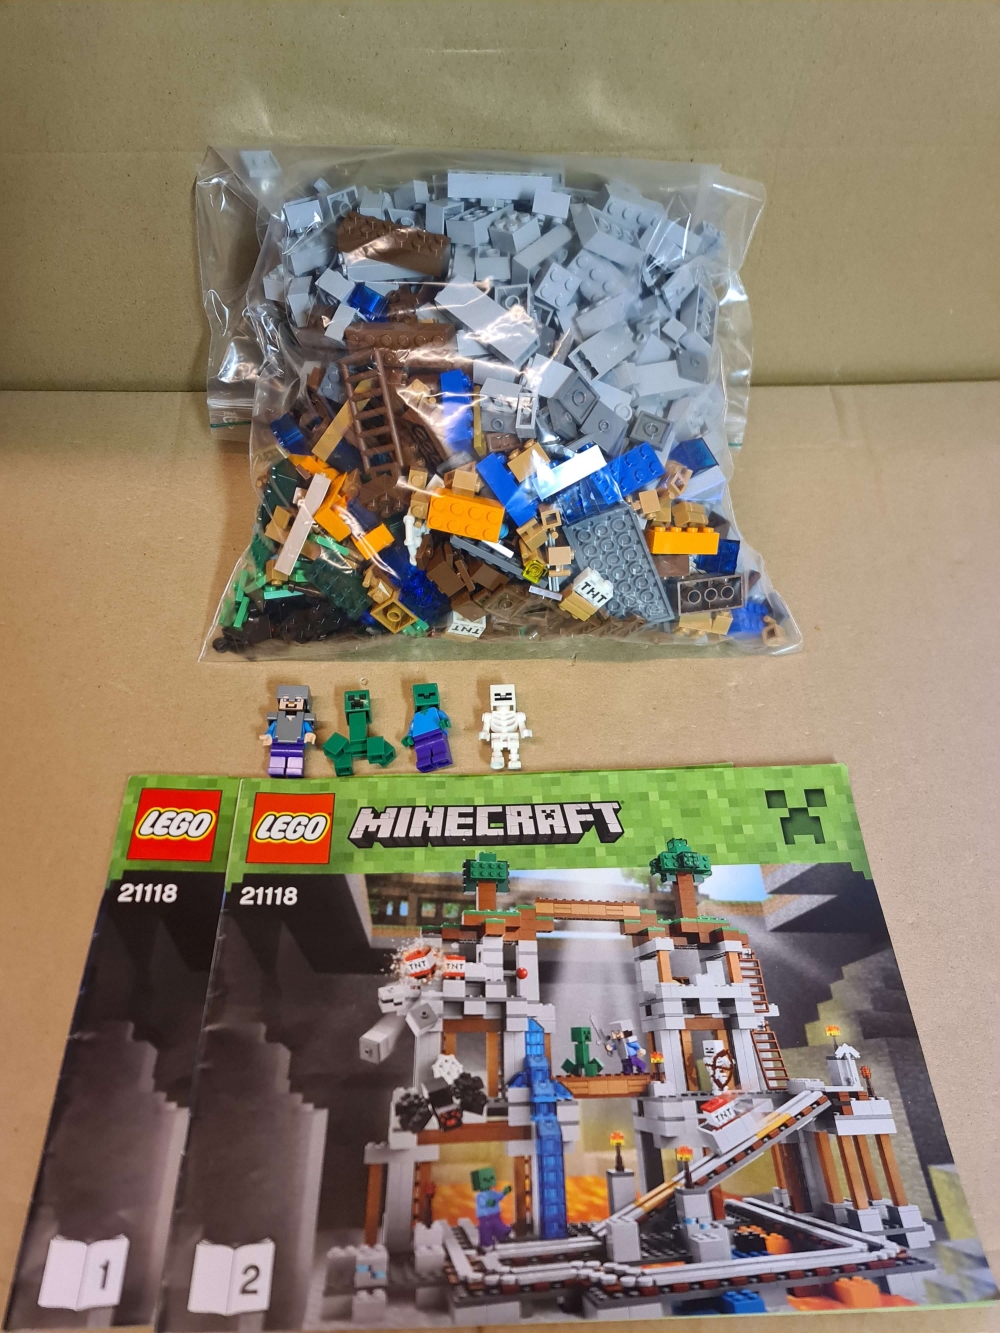 Sett 21118 fra Lego Minecraft serien. 

Som nytt. Komplett med manualer.